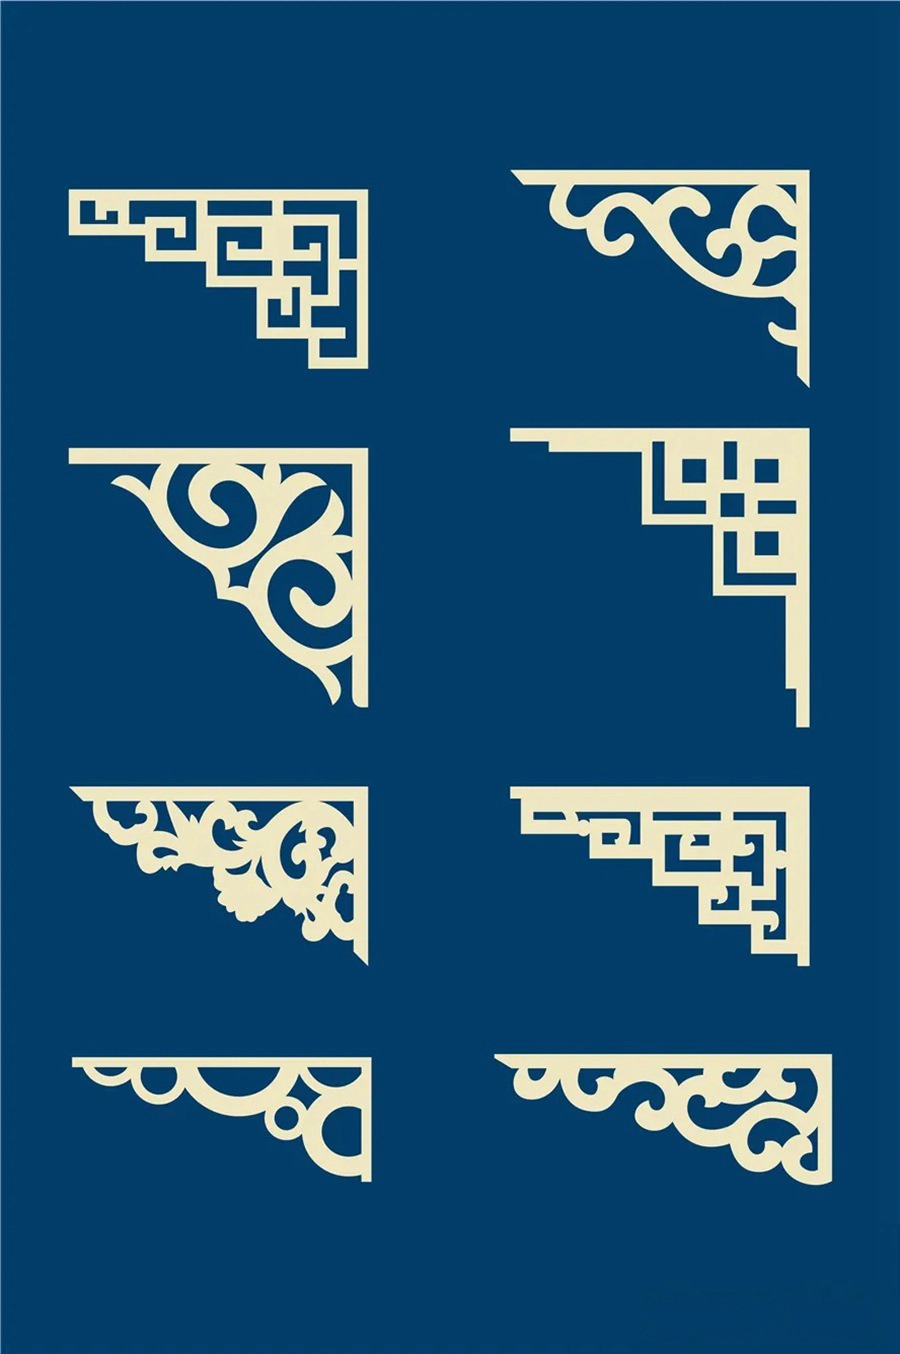 中国风传统古典青花瓷图案花纹图形纹样AI矢量模板花纹设计素材 图片素材 第3张